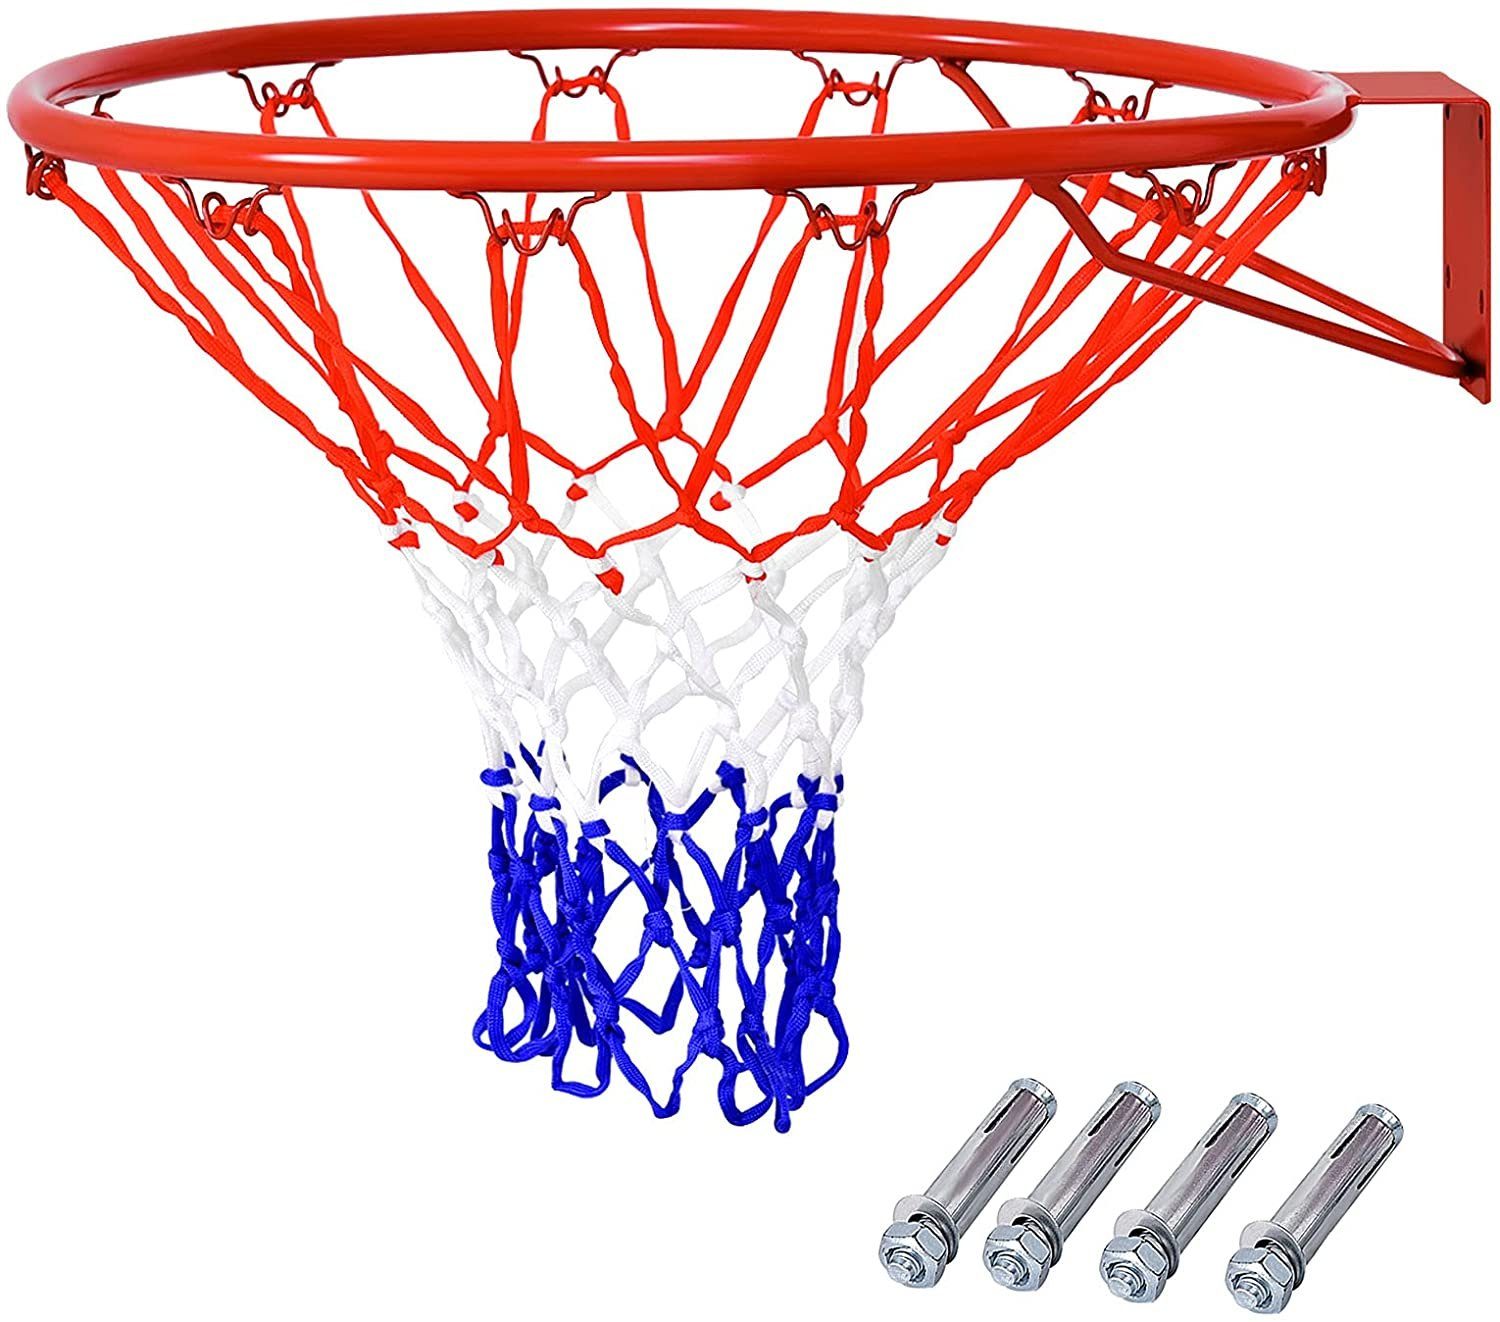 COSTWAY Basketballkorb Basketballring, Ø 45 cm mit Netz, für In-/Outdoor